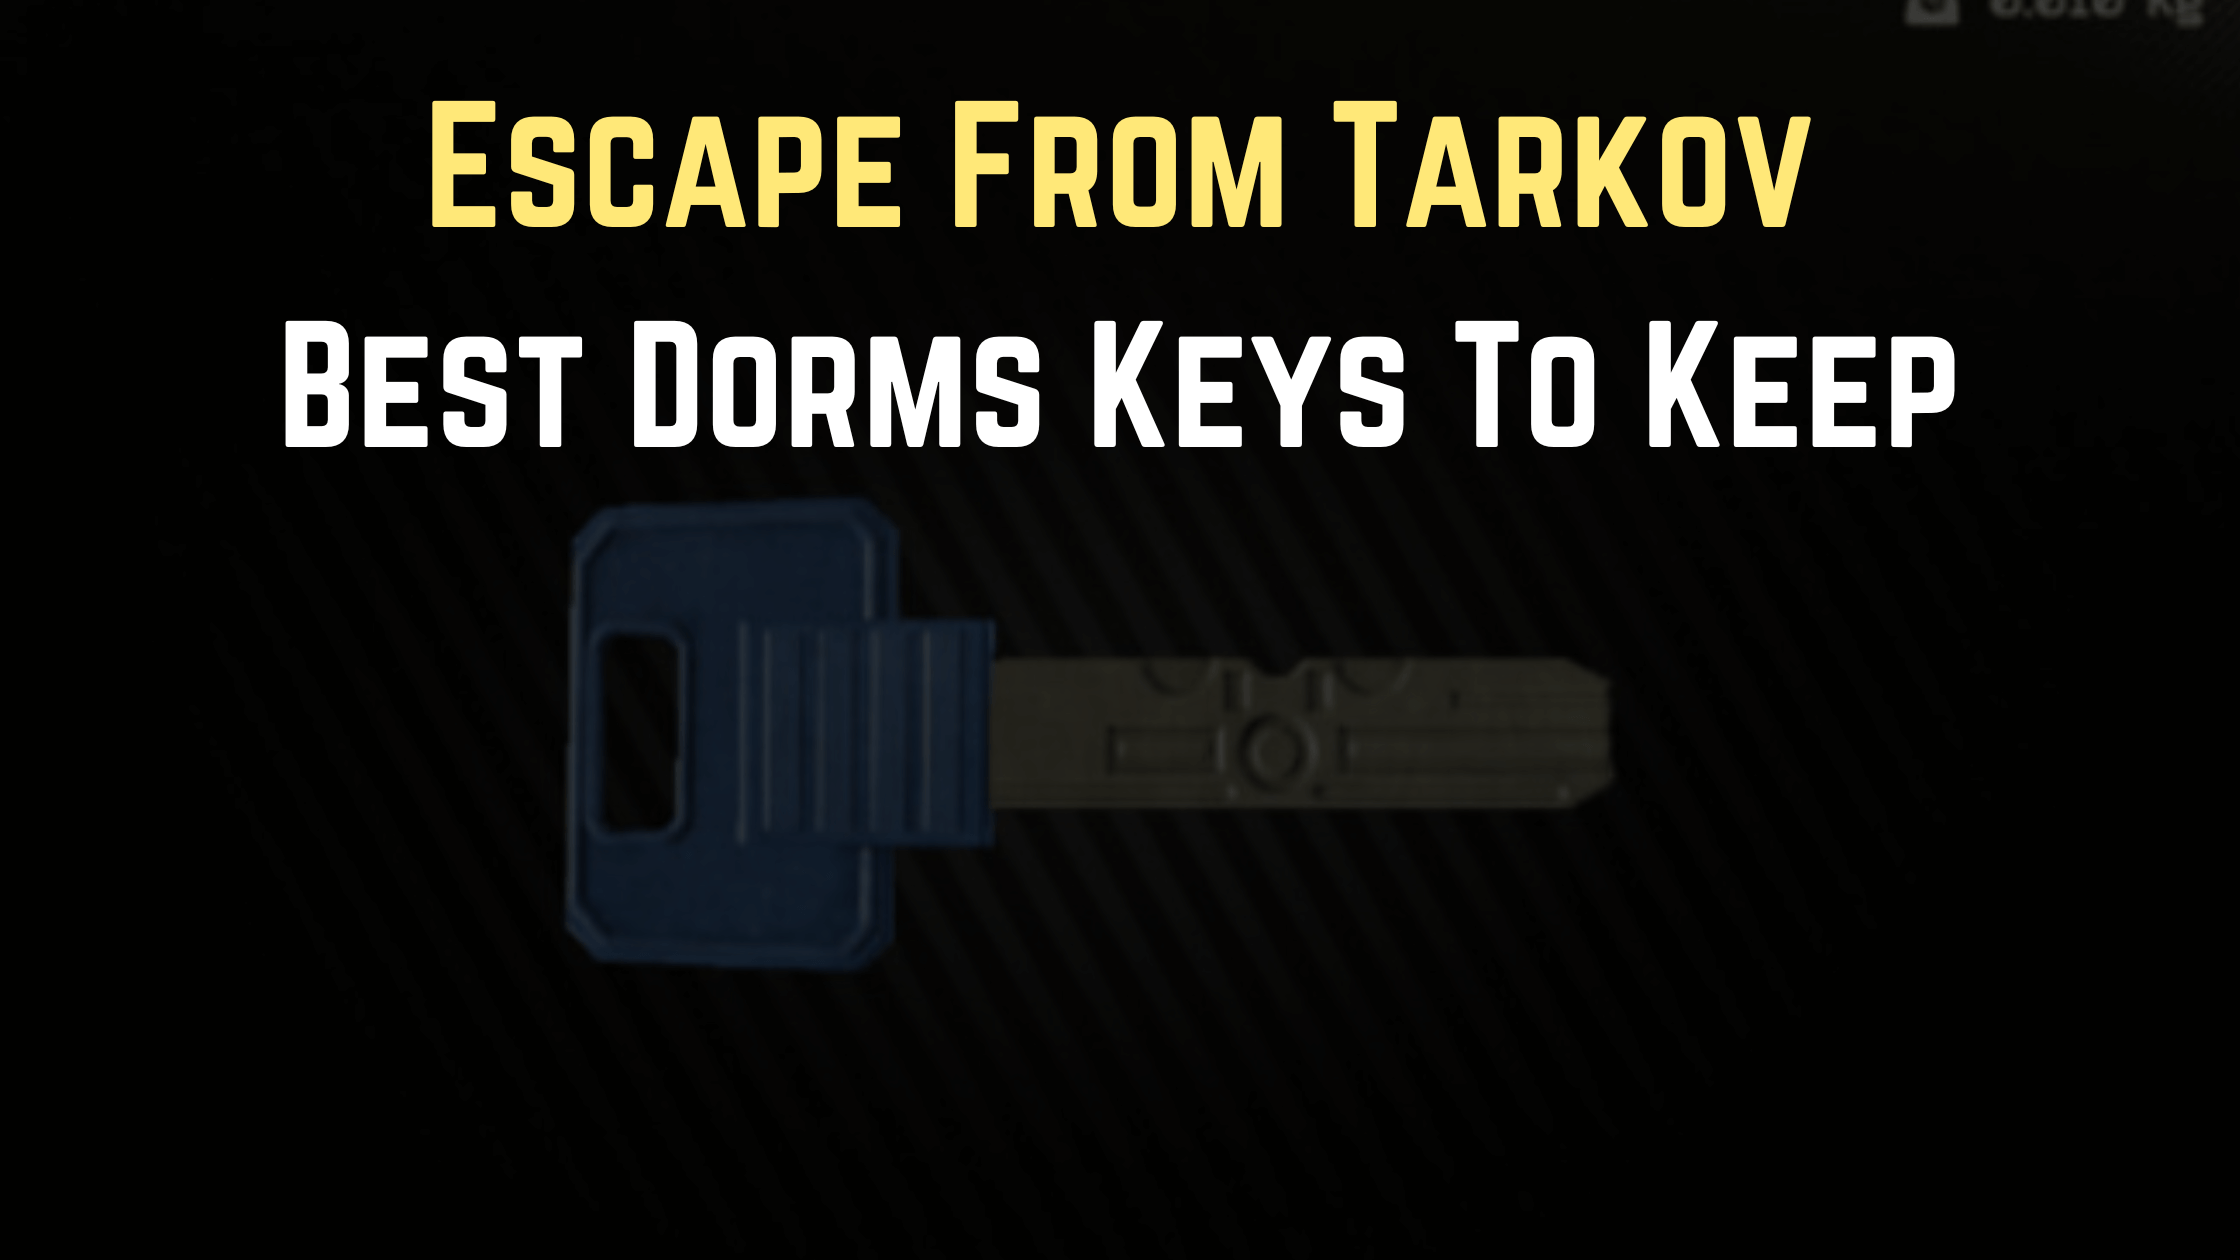 best dorms keys tarkov